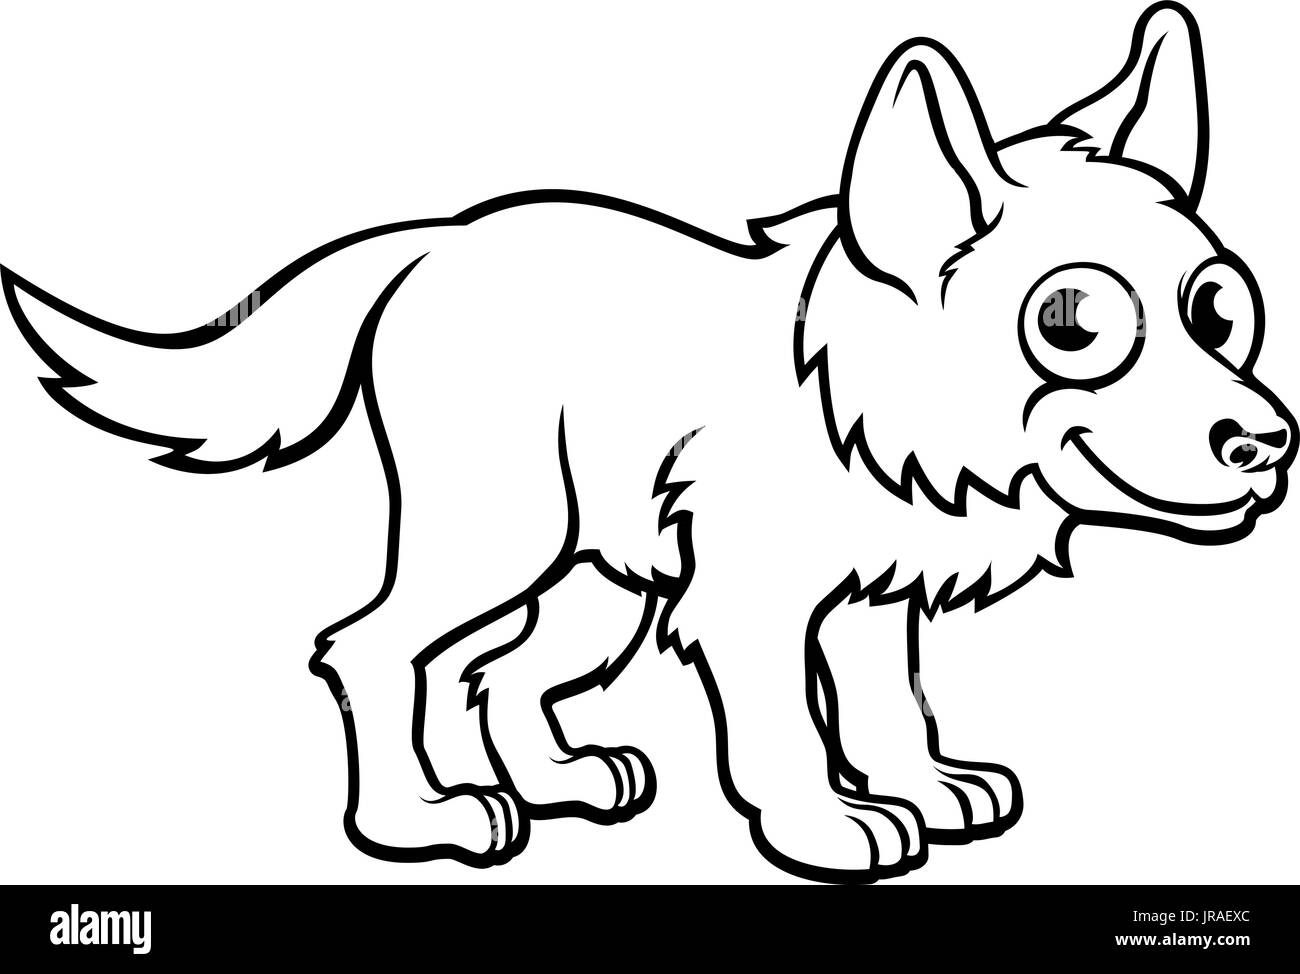 Lobo de dibujo Imágenes de stock en blanco y negro - Alamy